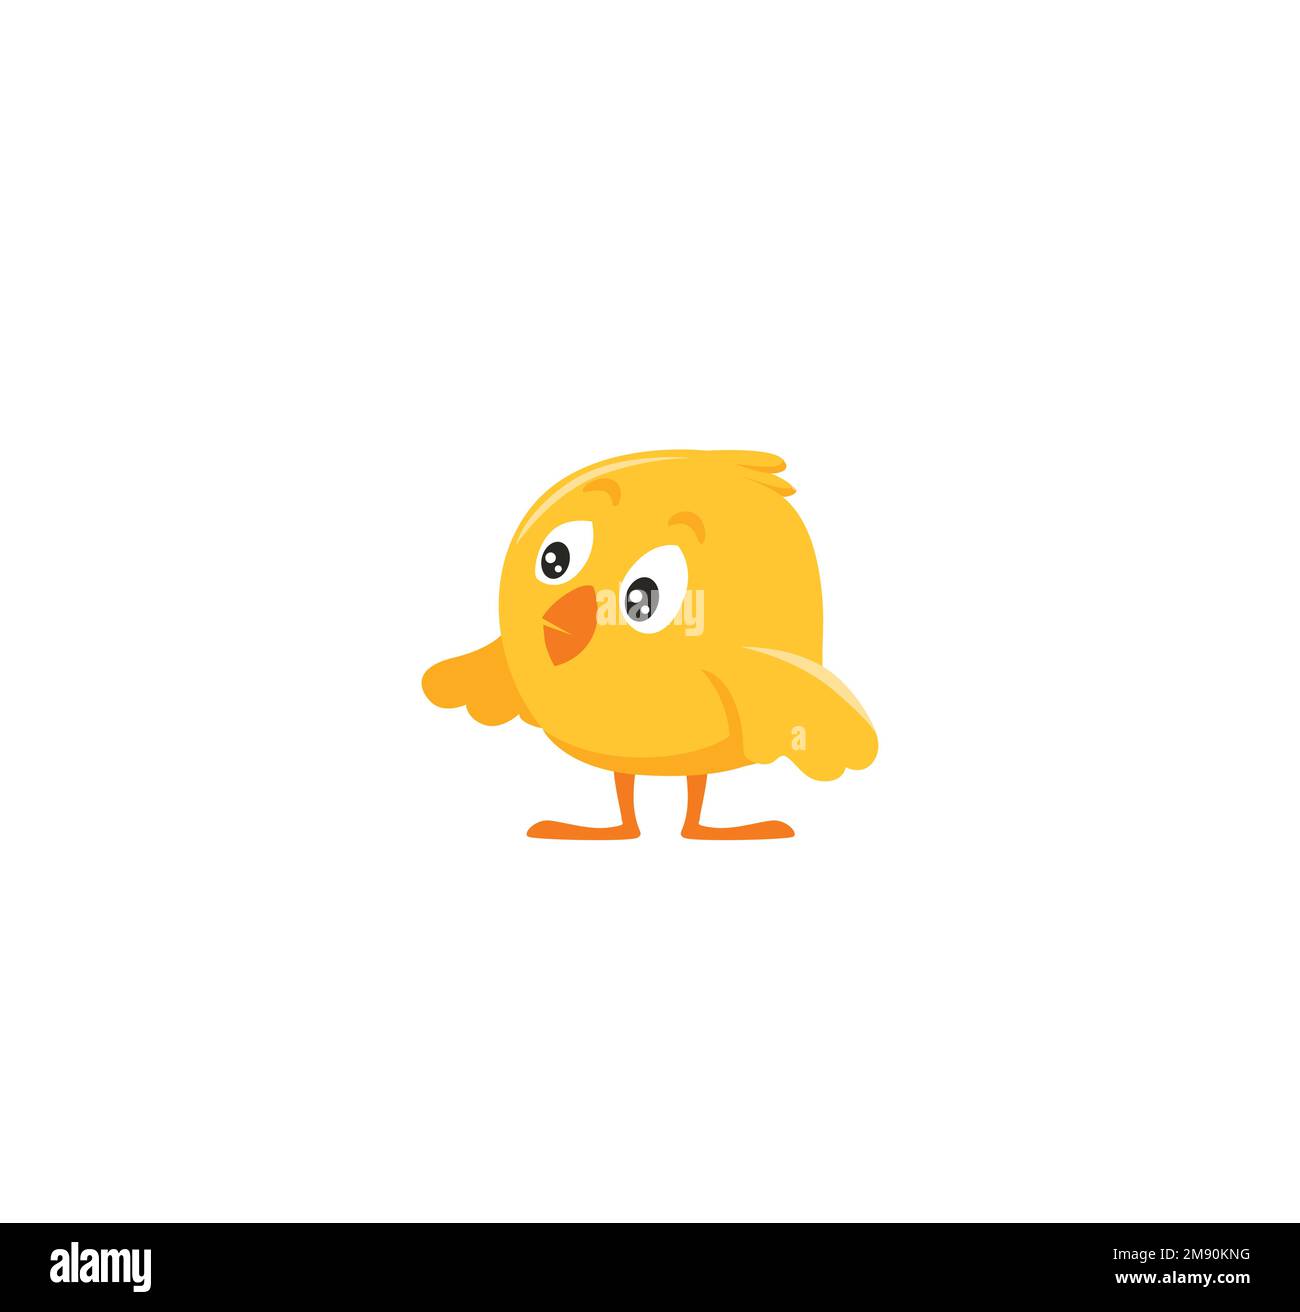 Süßes Cartoon-Huhn. Lustiger kleiner Vogel für lustiges Weihnachtsdesign Stock Vektor